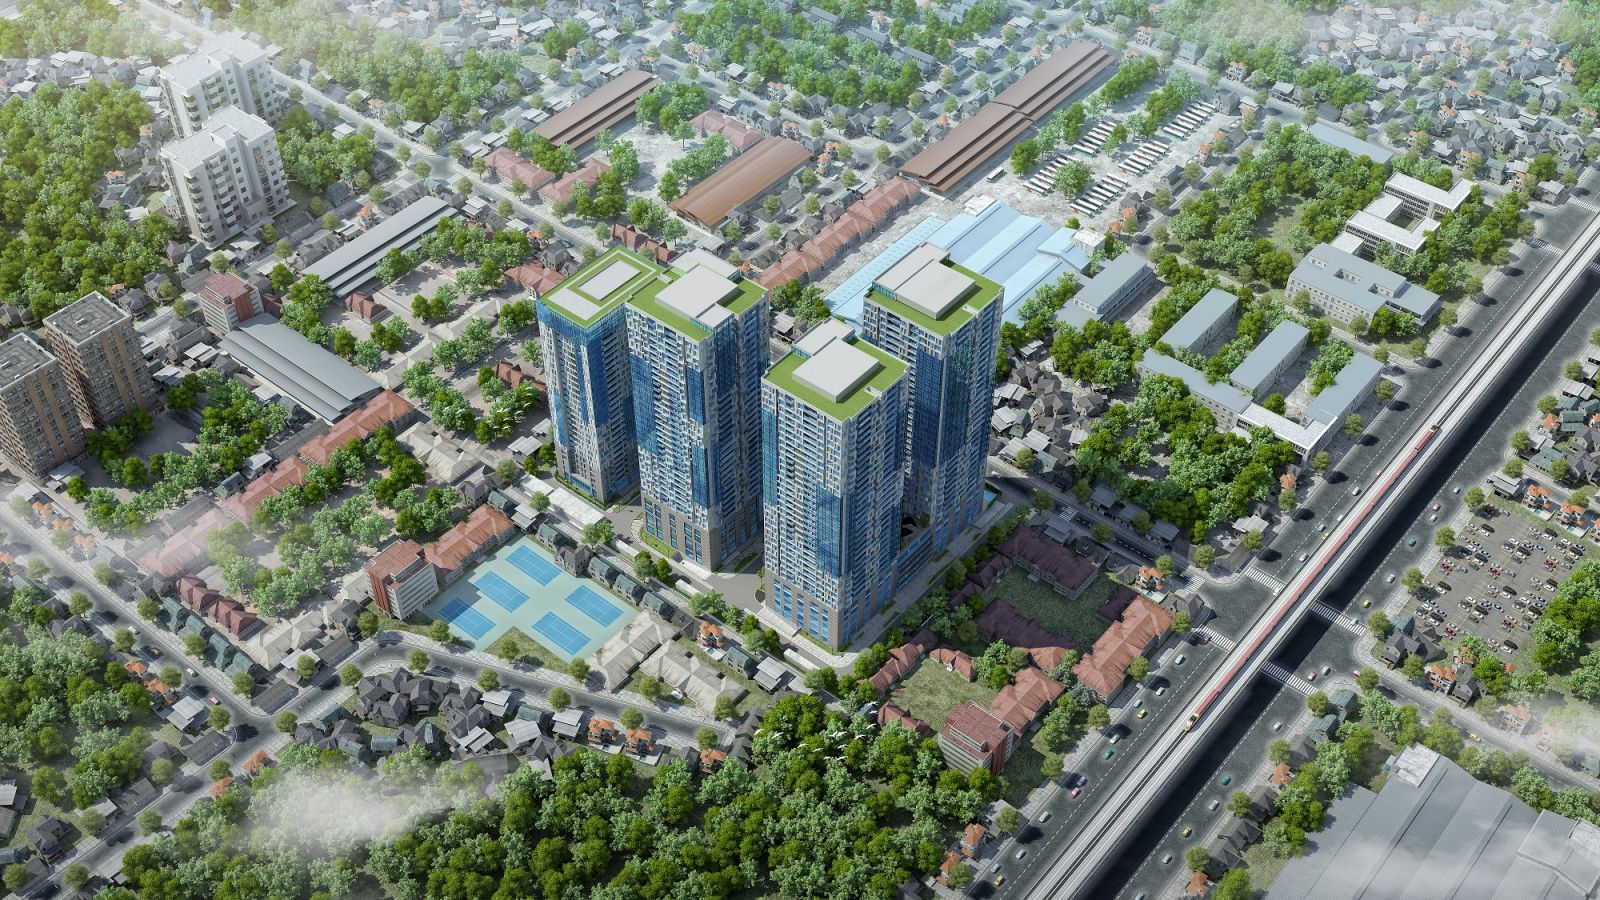 TNR GoldSeason nổi bật giữa trung tâm Quận Thanh Xuân với 4 tòa căn hộ